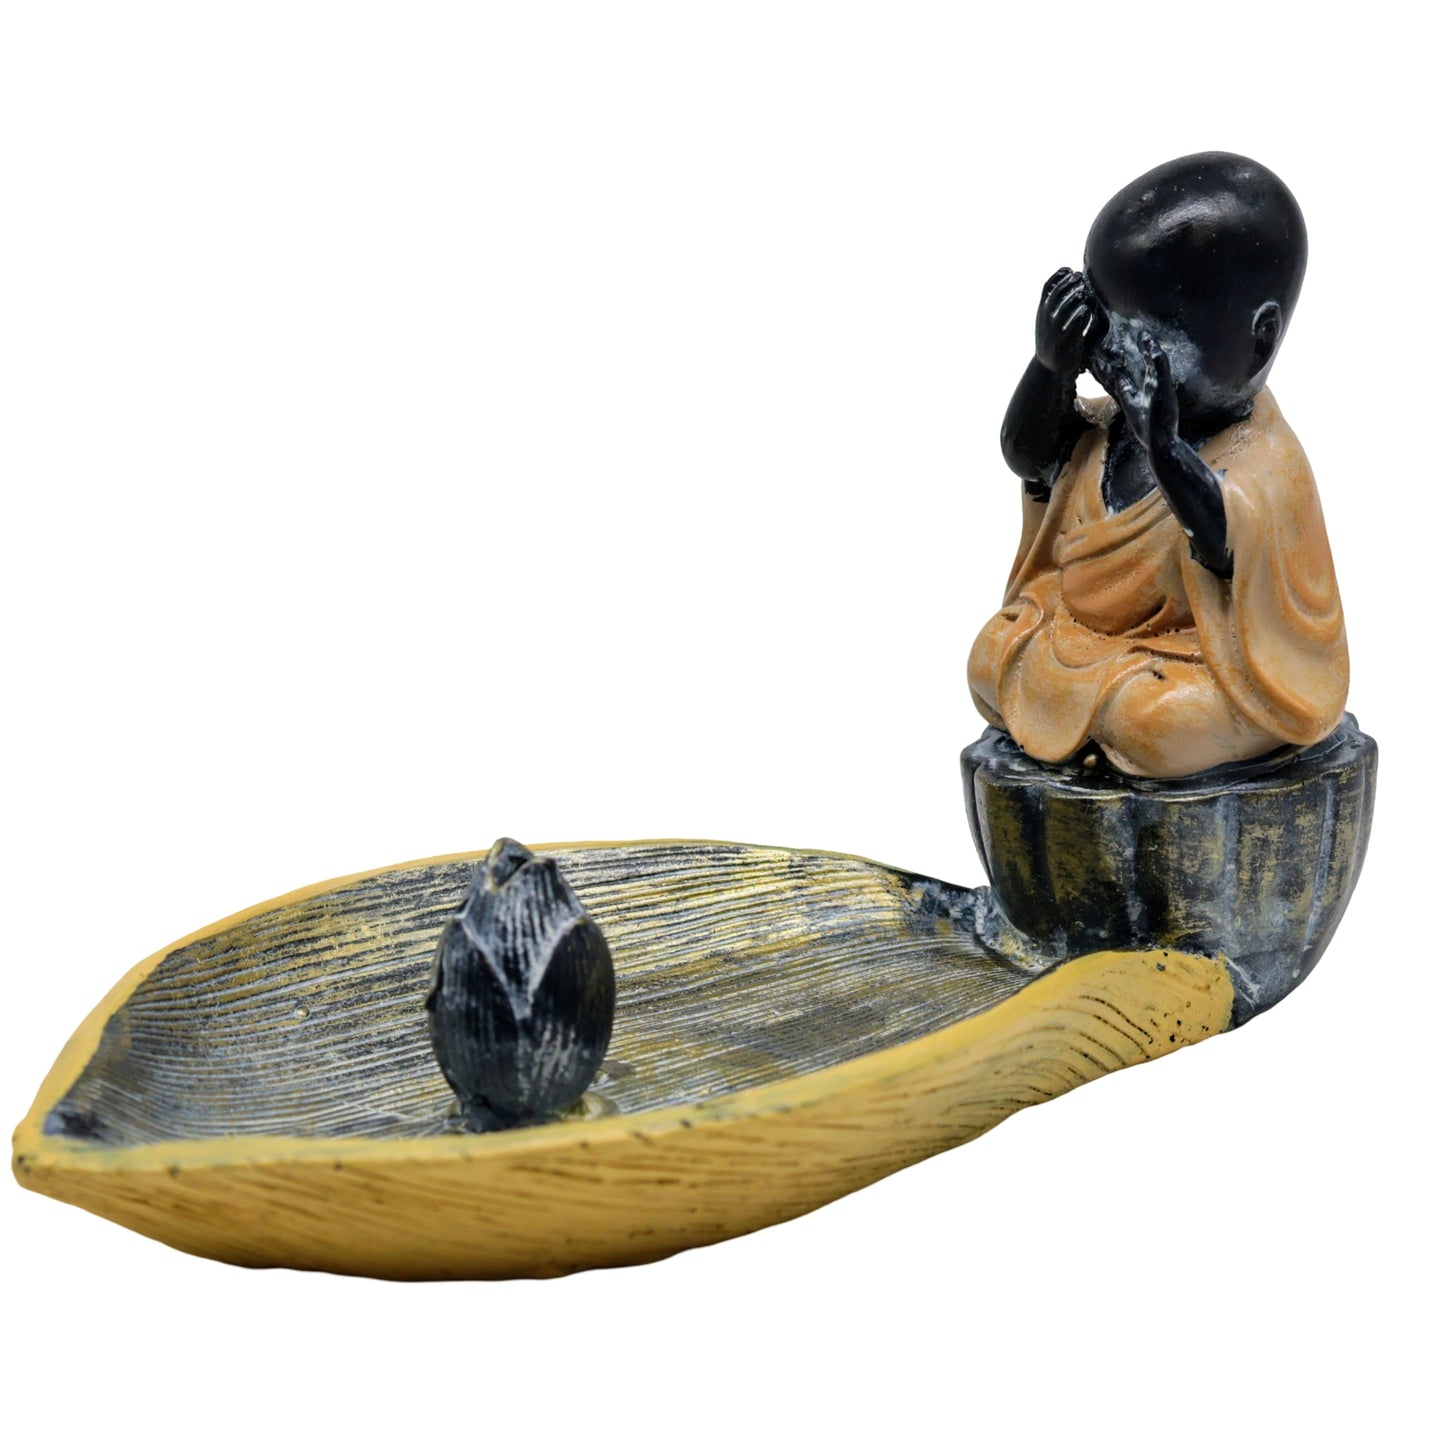 Incense Burner - Sticks, Cones & Smudge - Ceramic - Baby Monk on Lotus Leaf